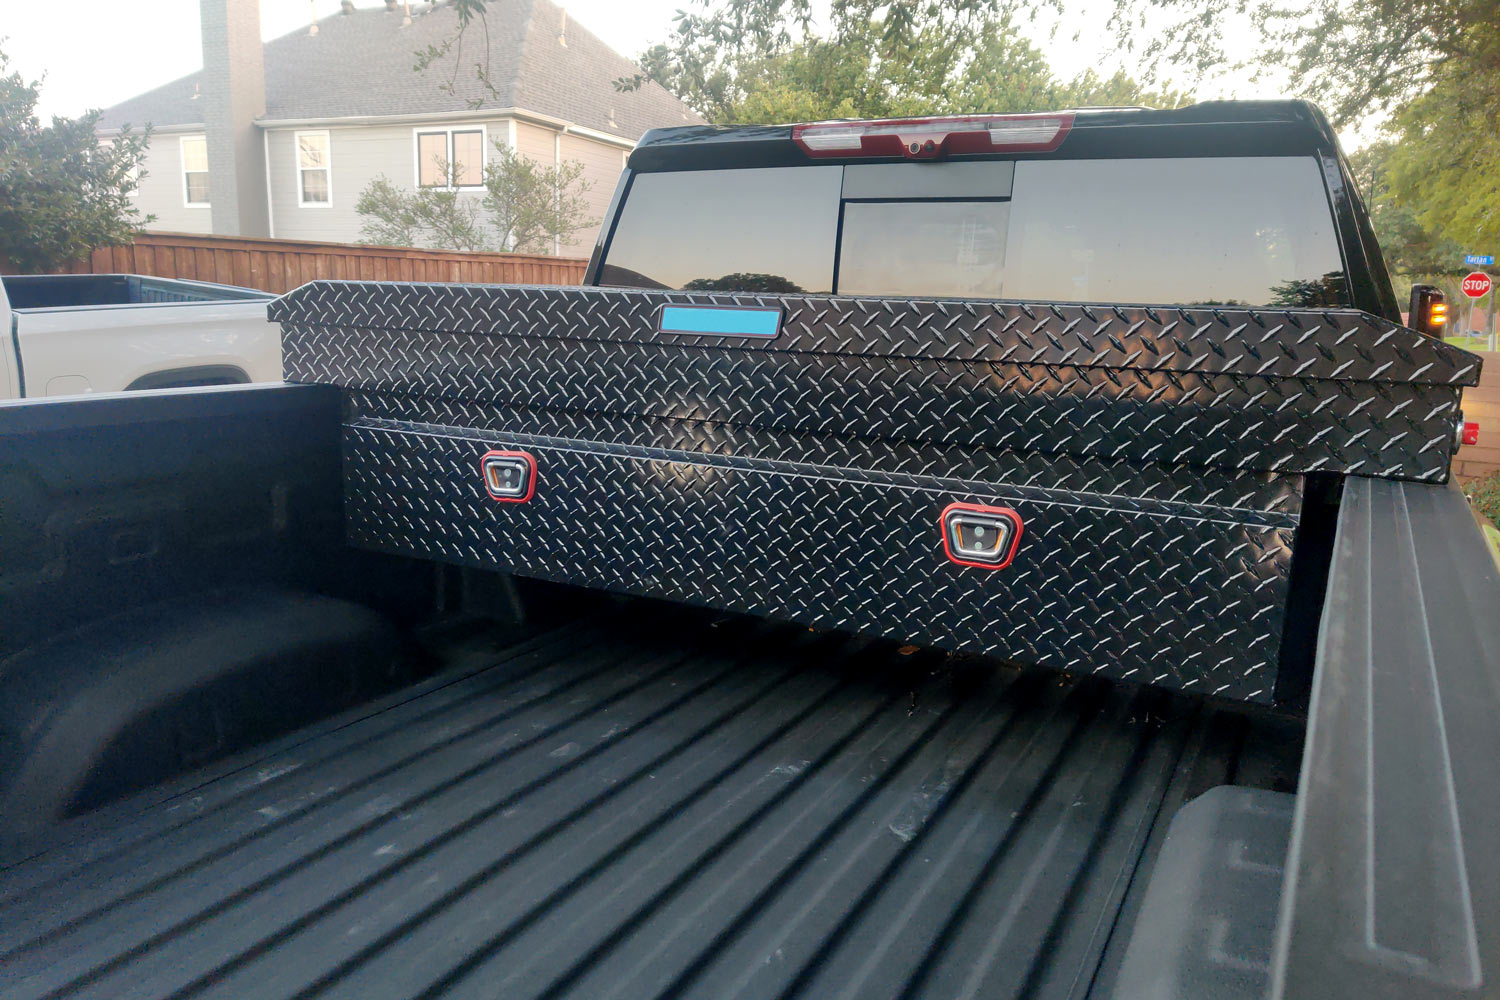 Black steel toolbox in bed of pickup truck.